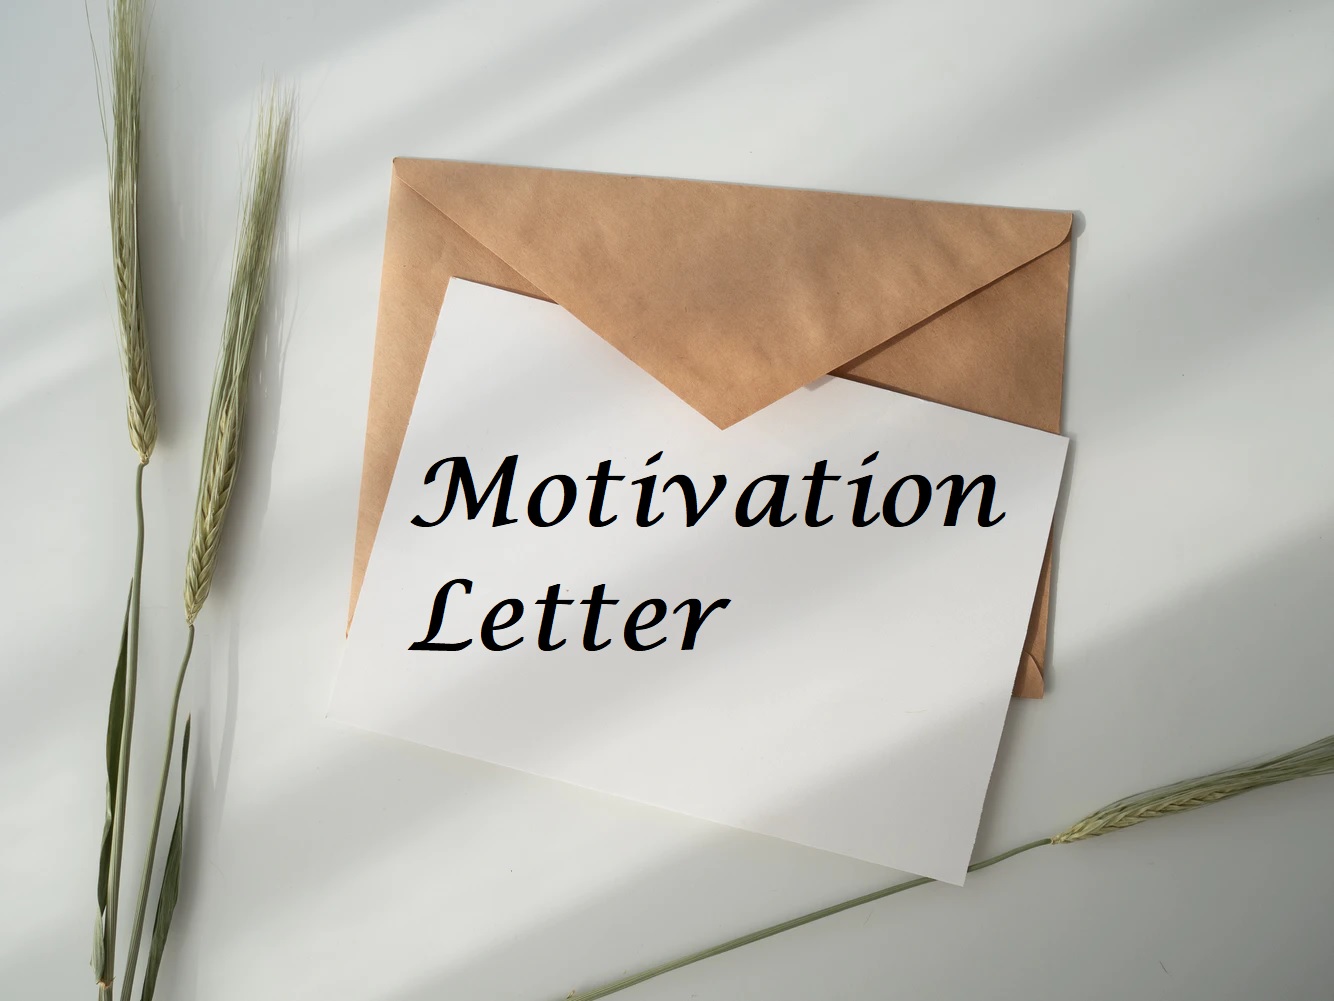 Contoh Motivation Letter